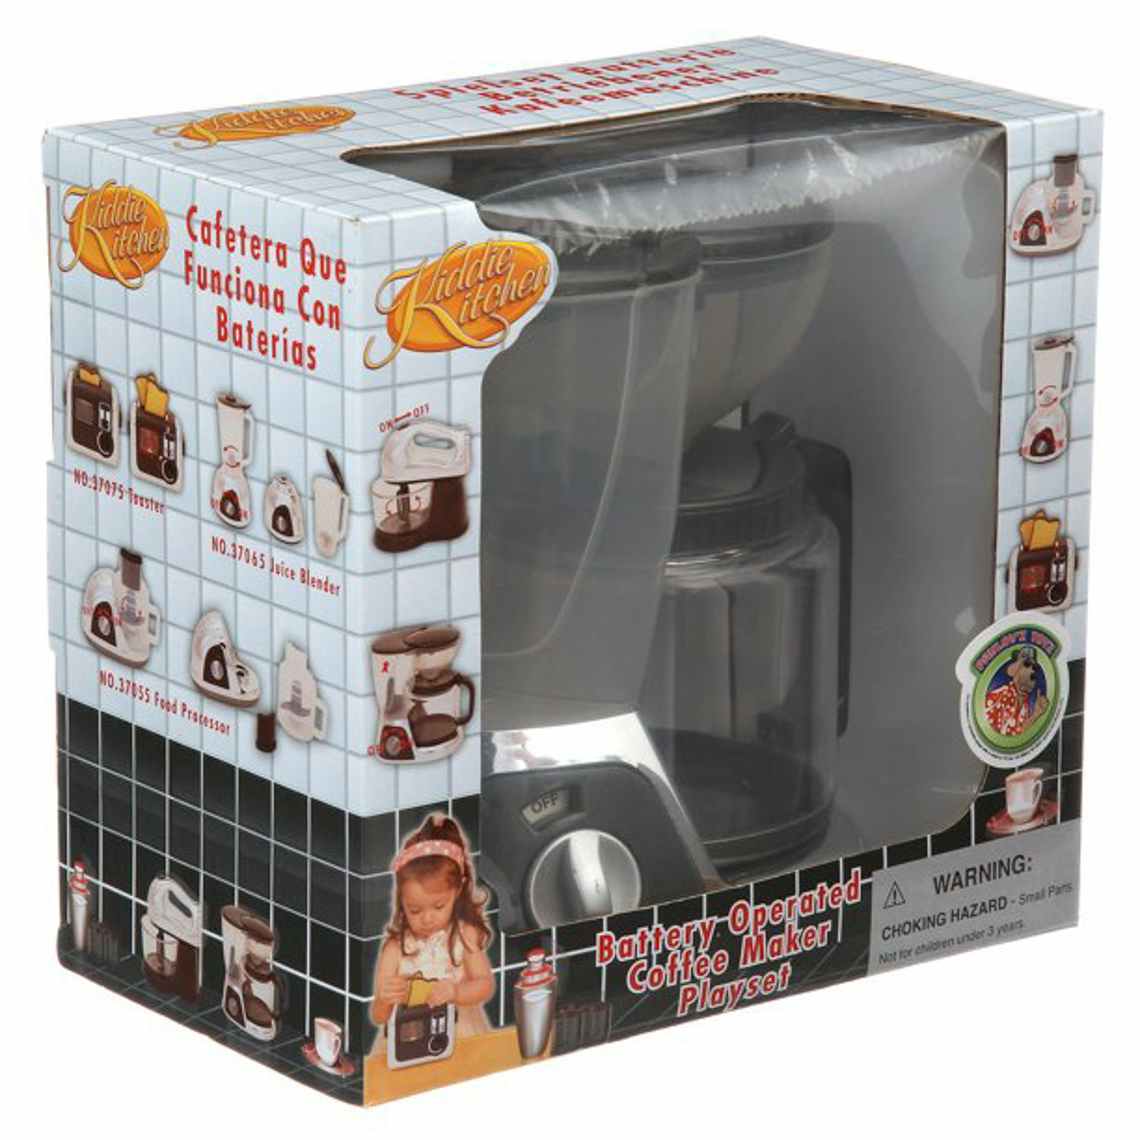 kiddie kitchen coffee maker toy on white background